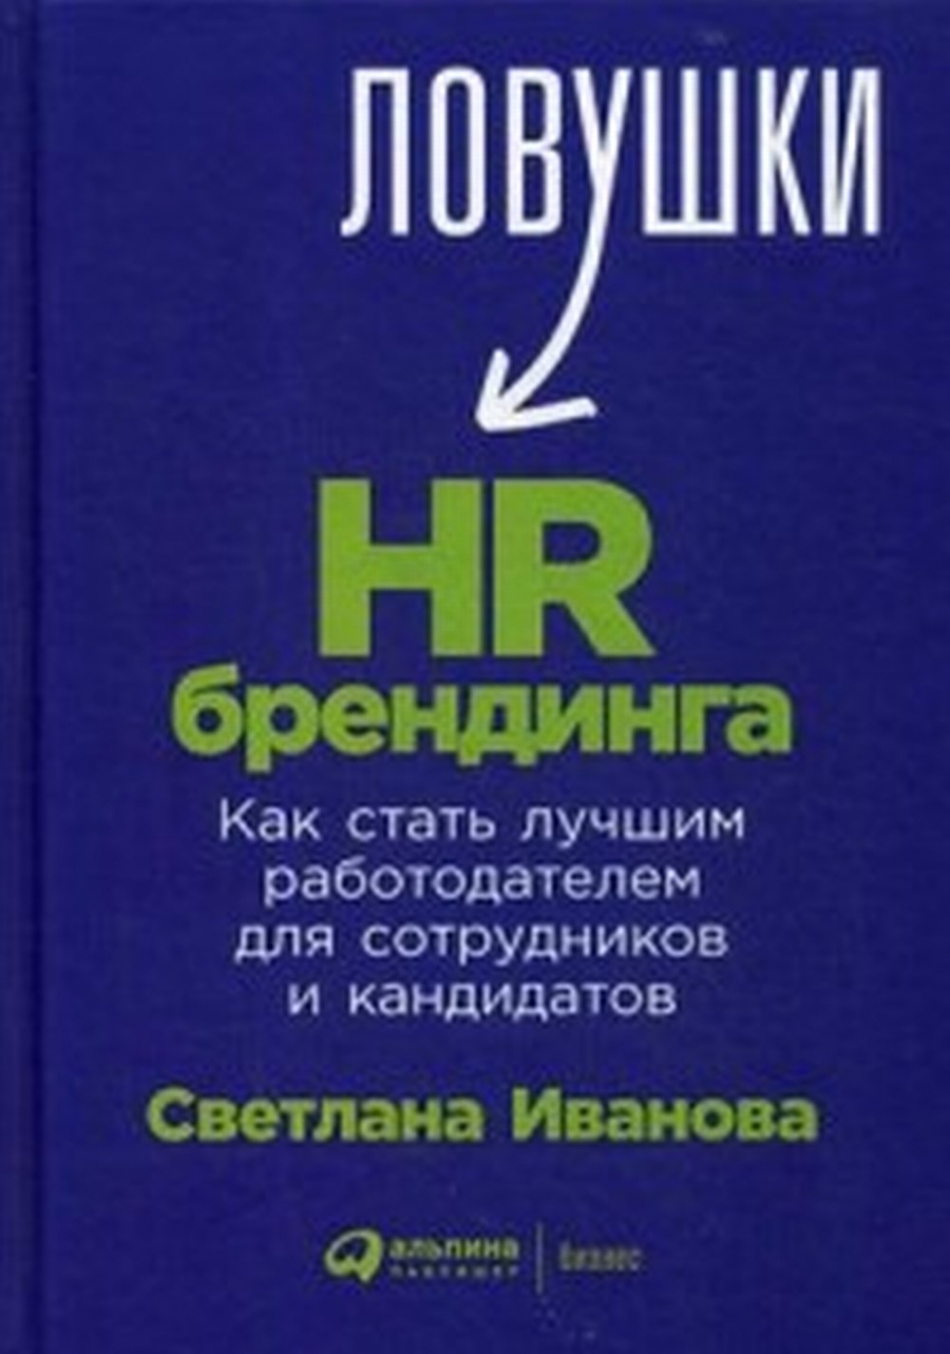  ..  HR- 